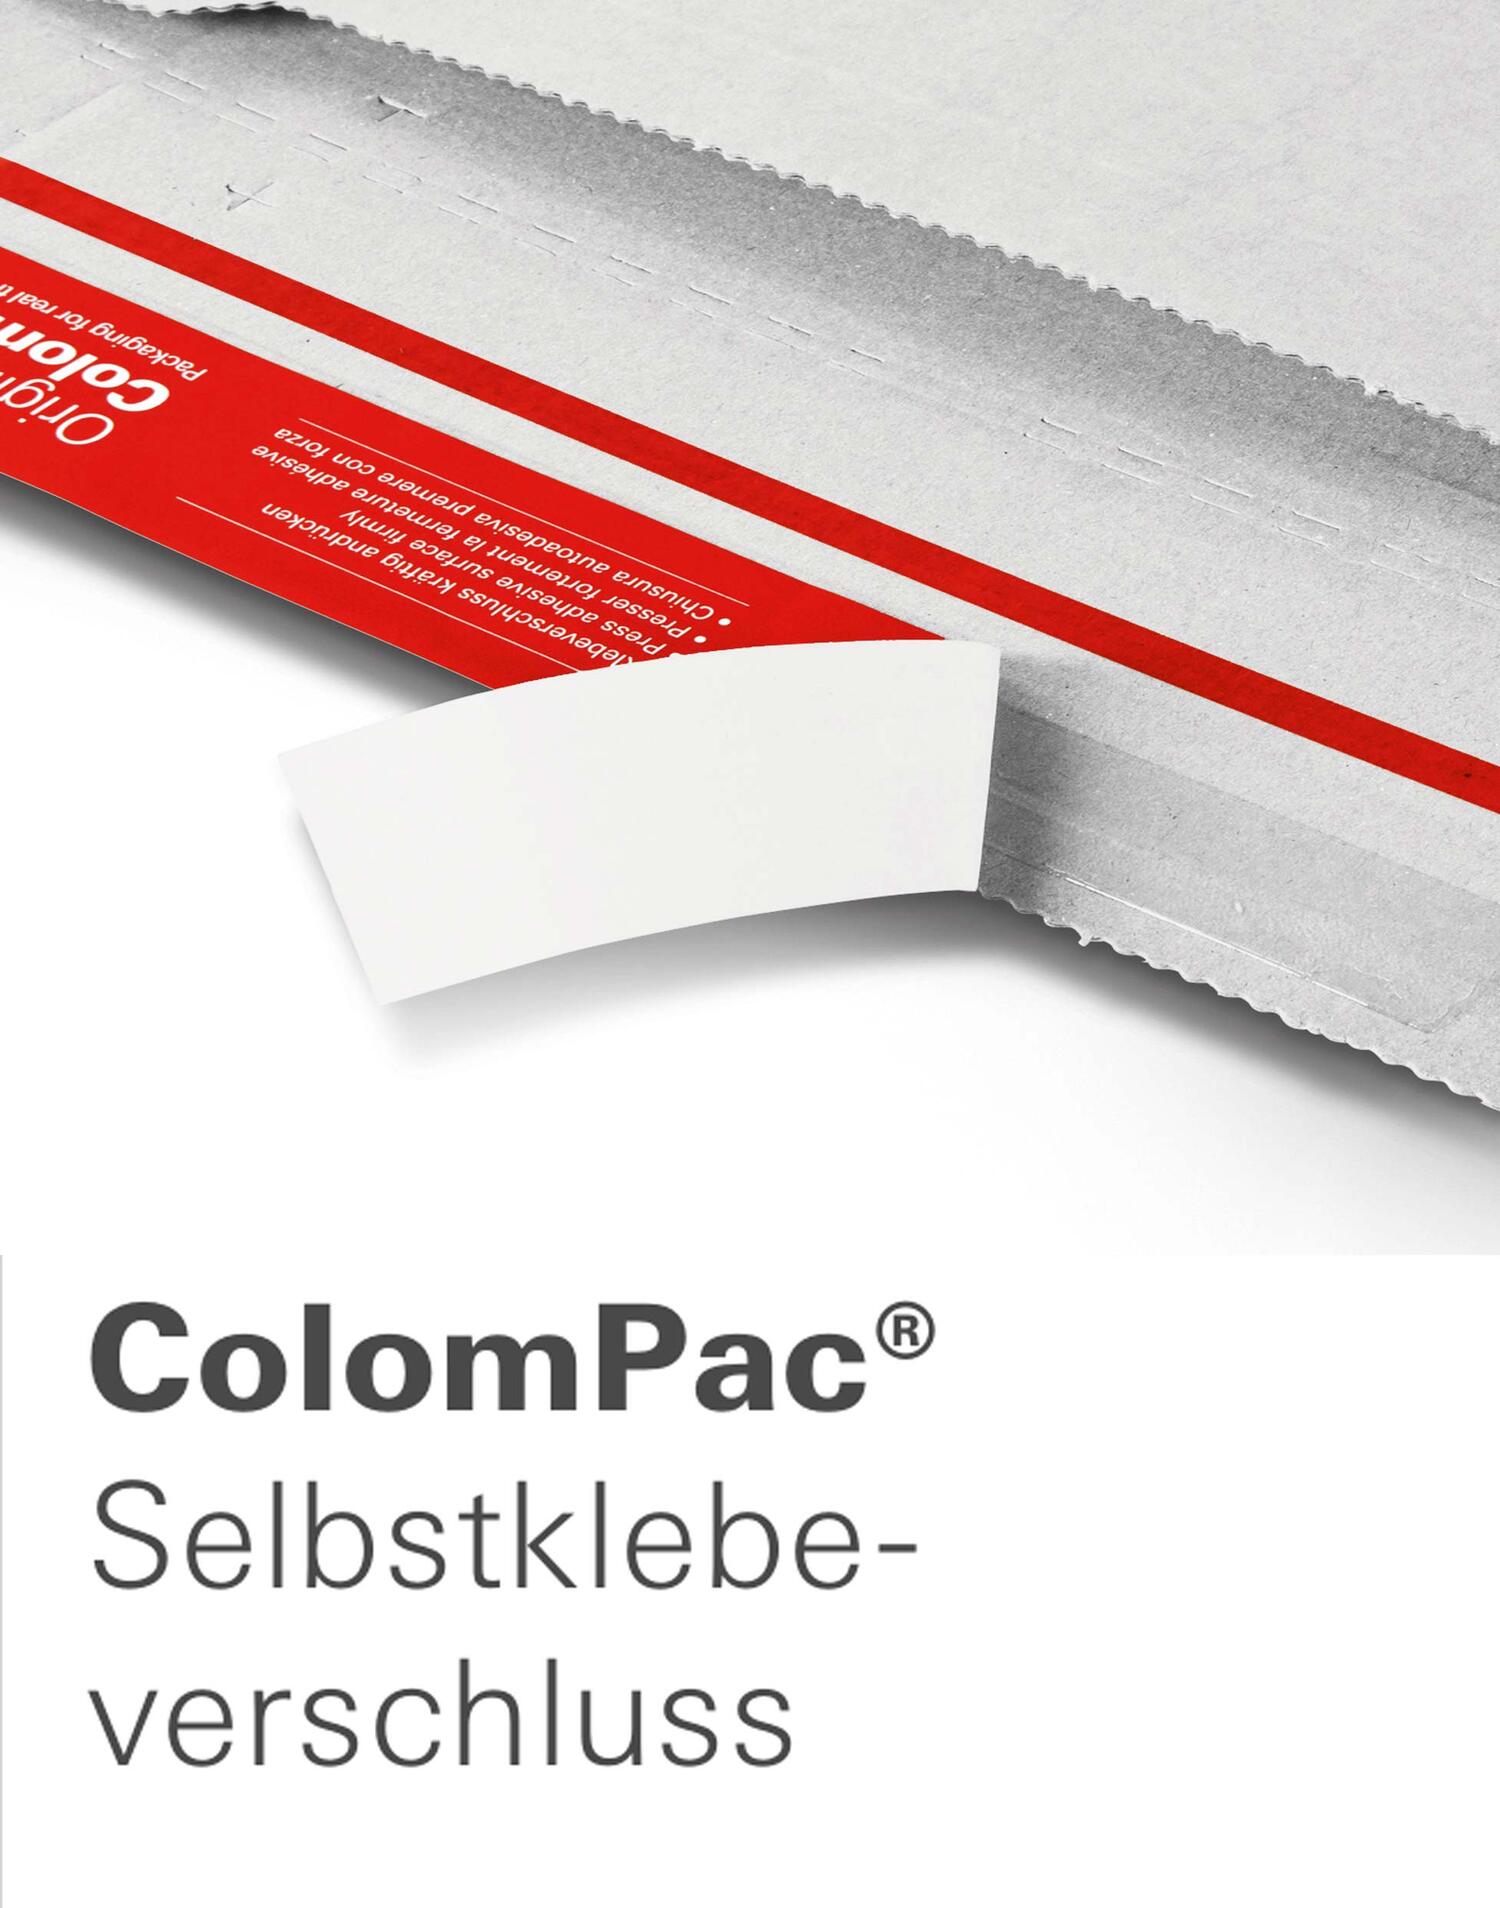 ColomPac Fashionbox 455 x 390 x 85mm mit Selbstklebeverschluss & Aufreifaden wei